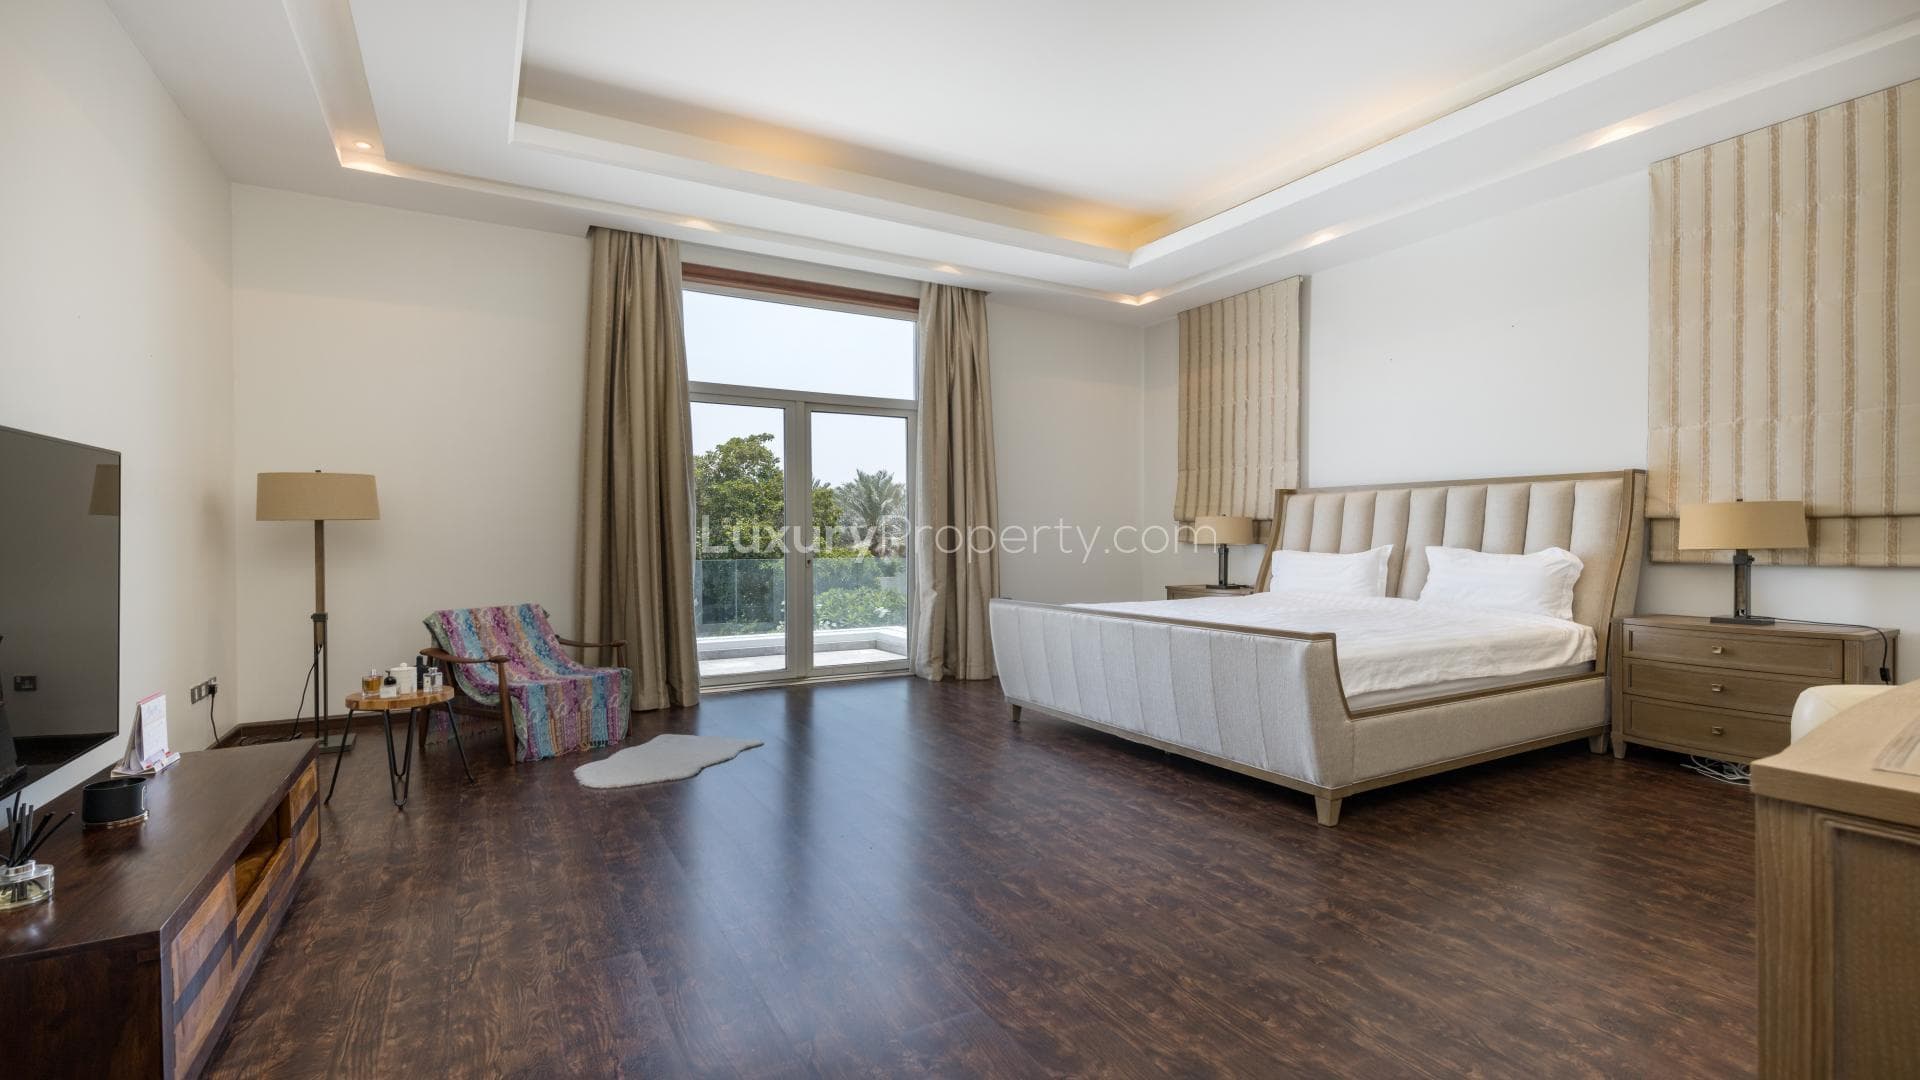 4 Bedroom Villa For Rent Emirates Hills Villas Lp20756 5d5a3005d759480.jpg